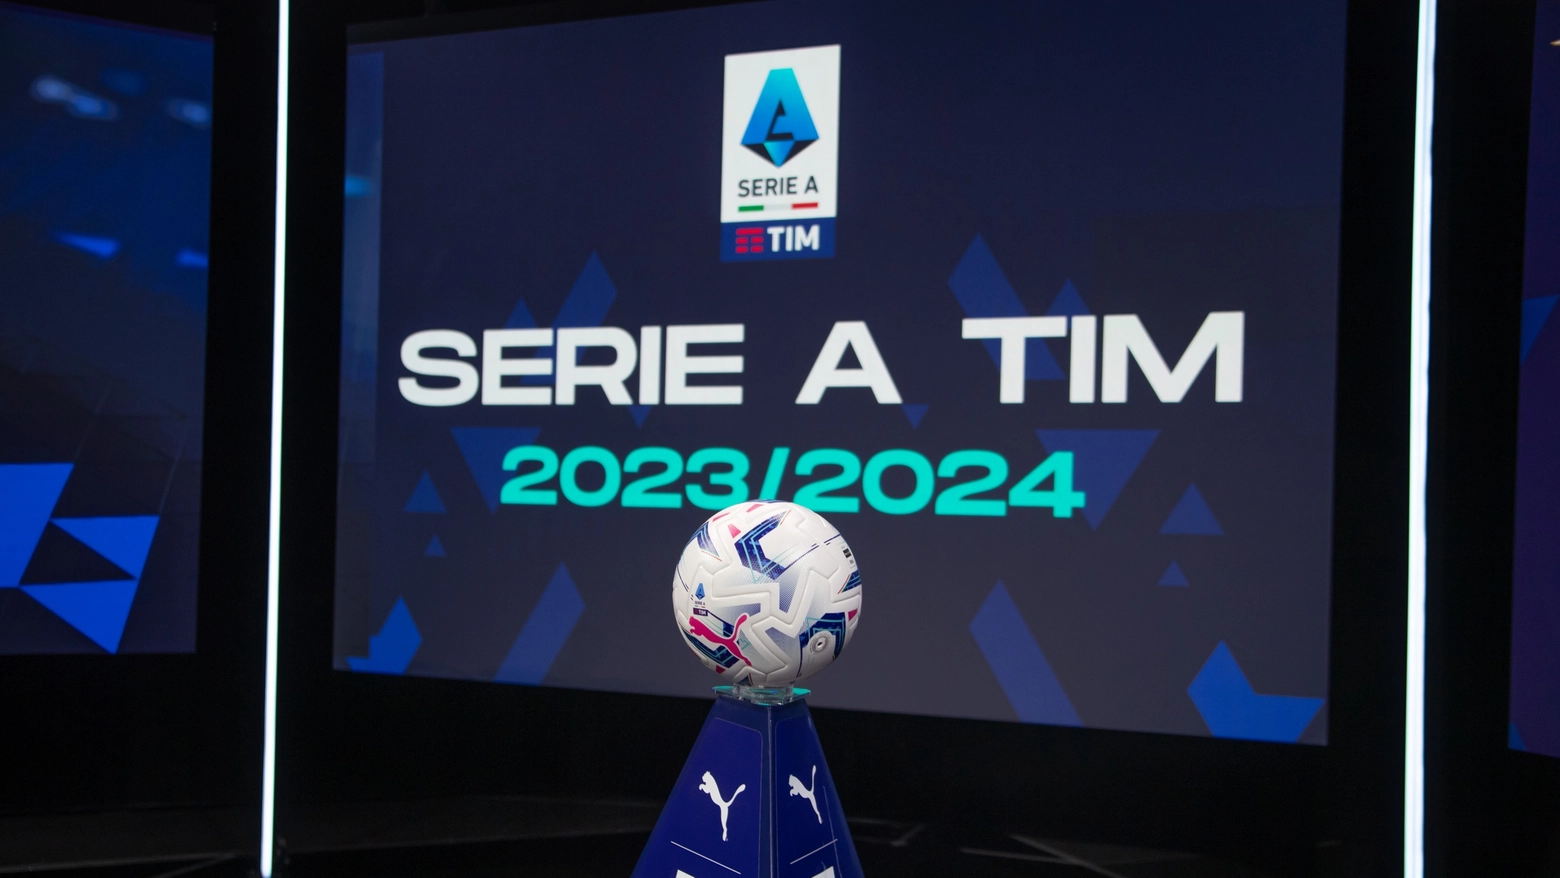 Il calendario di anticipi e posticipi del campionato di calcio Serie A